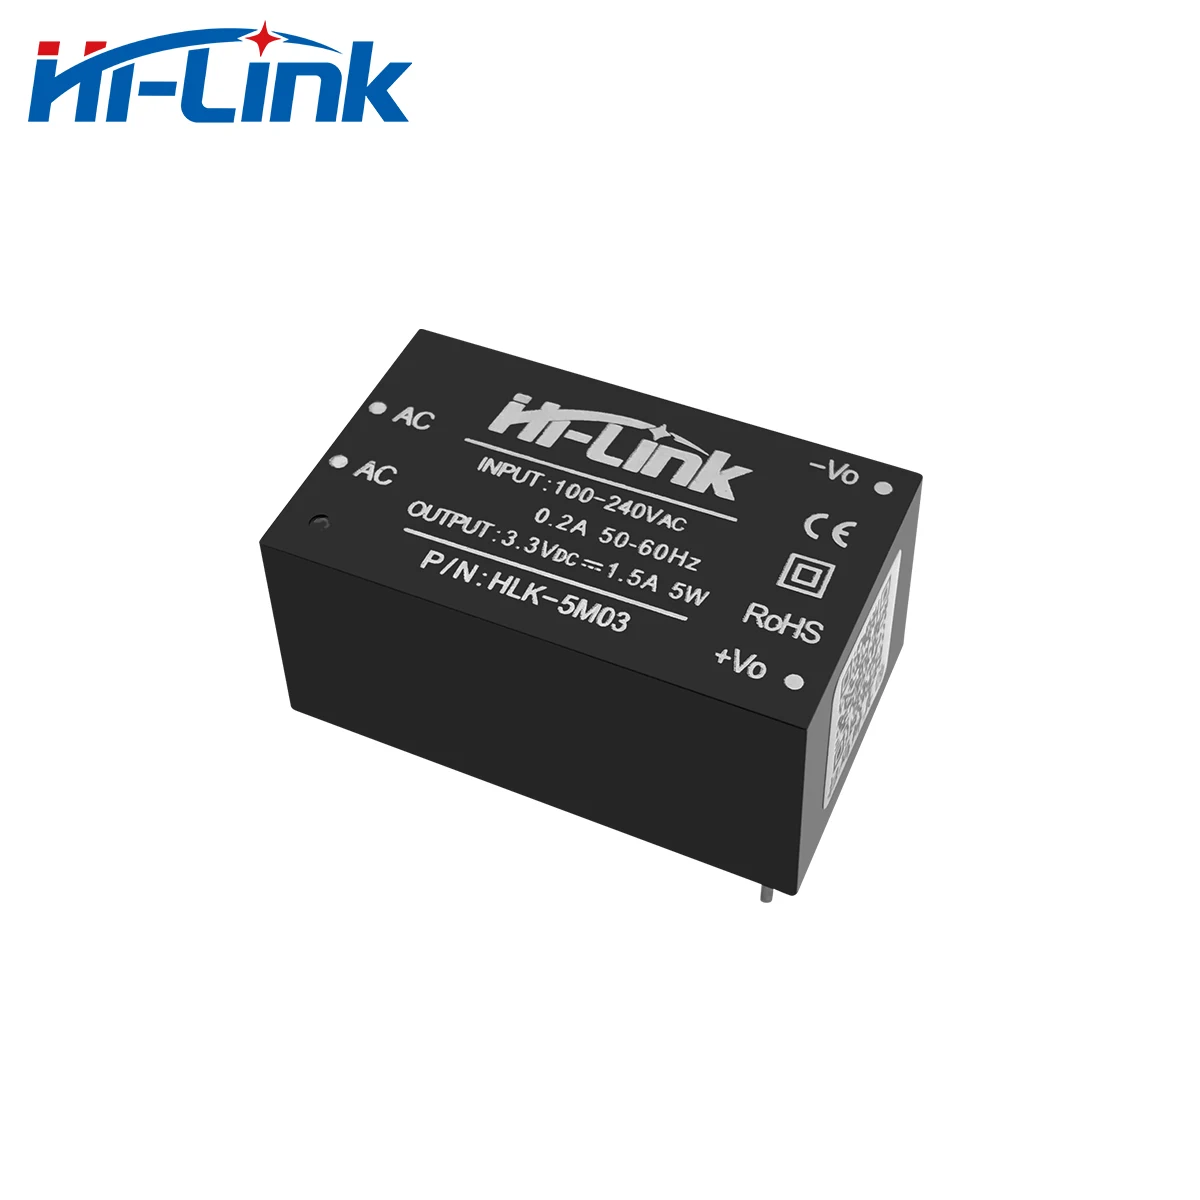 Hi-Link-módulo de fuente de alimentación Original, 5W, 3,3 V, 220V, 110V, CA, CC, HLK-5M03 de fuente